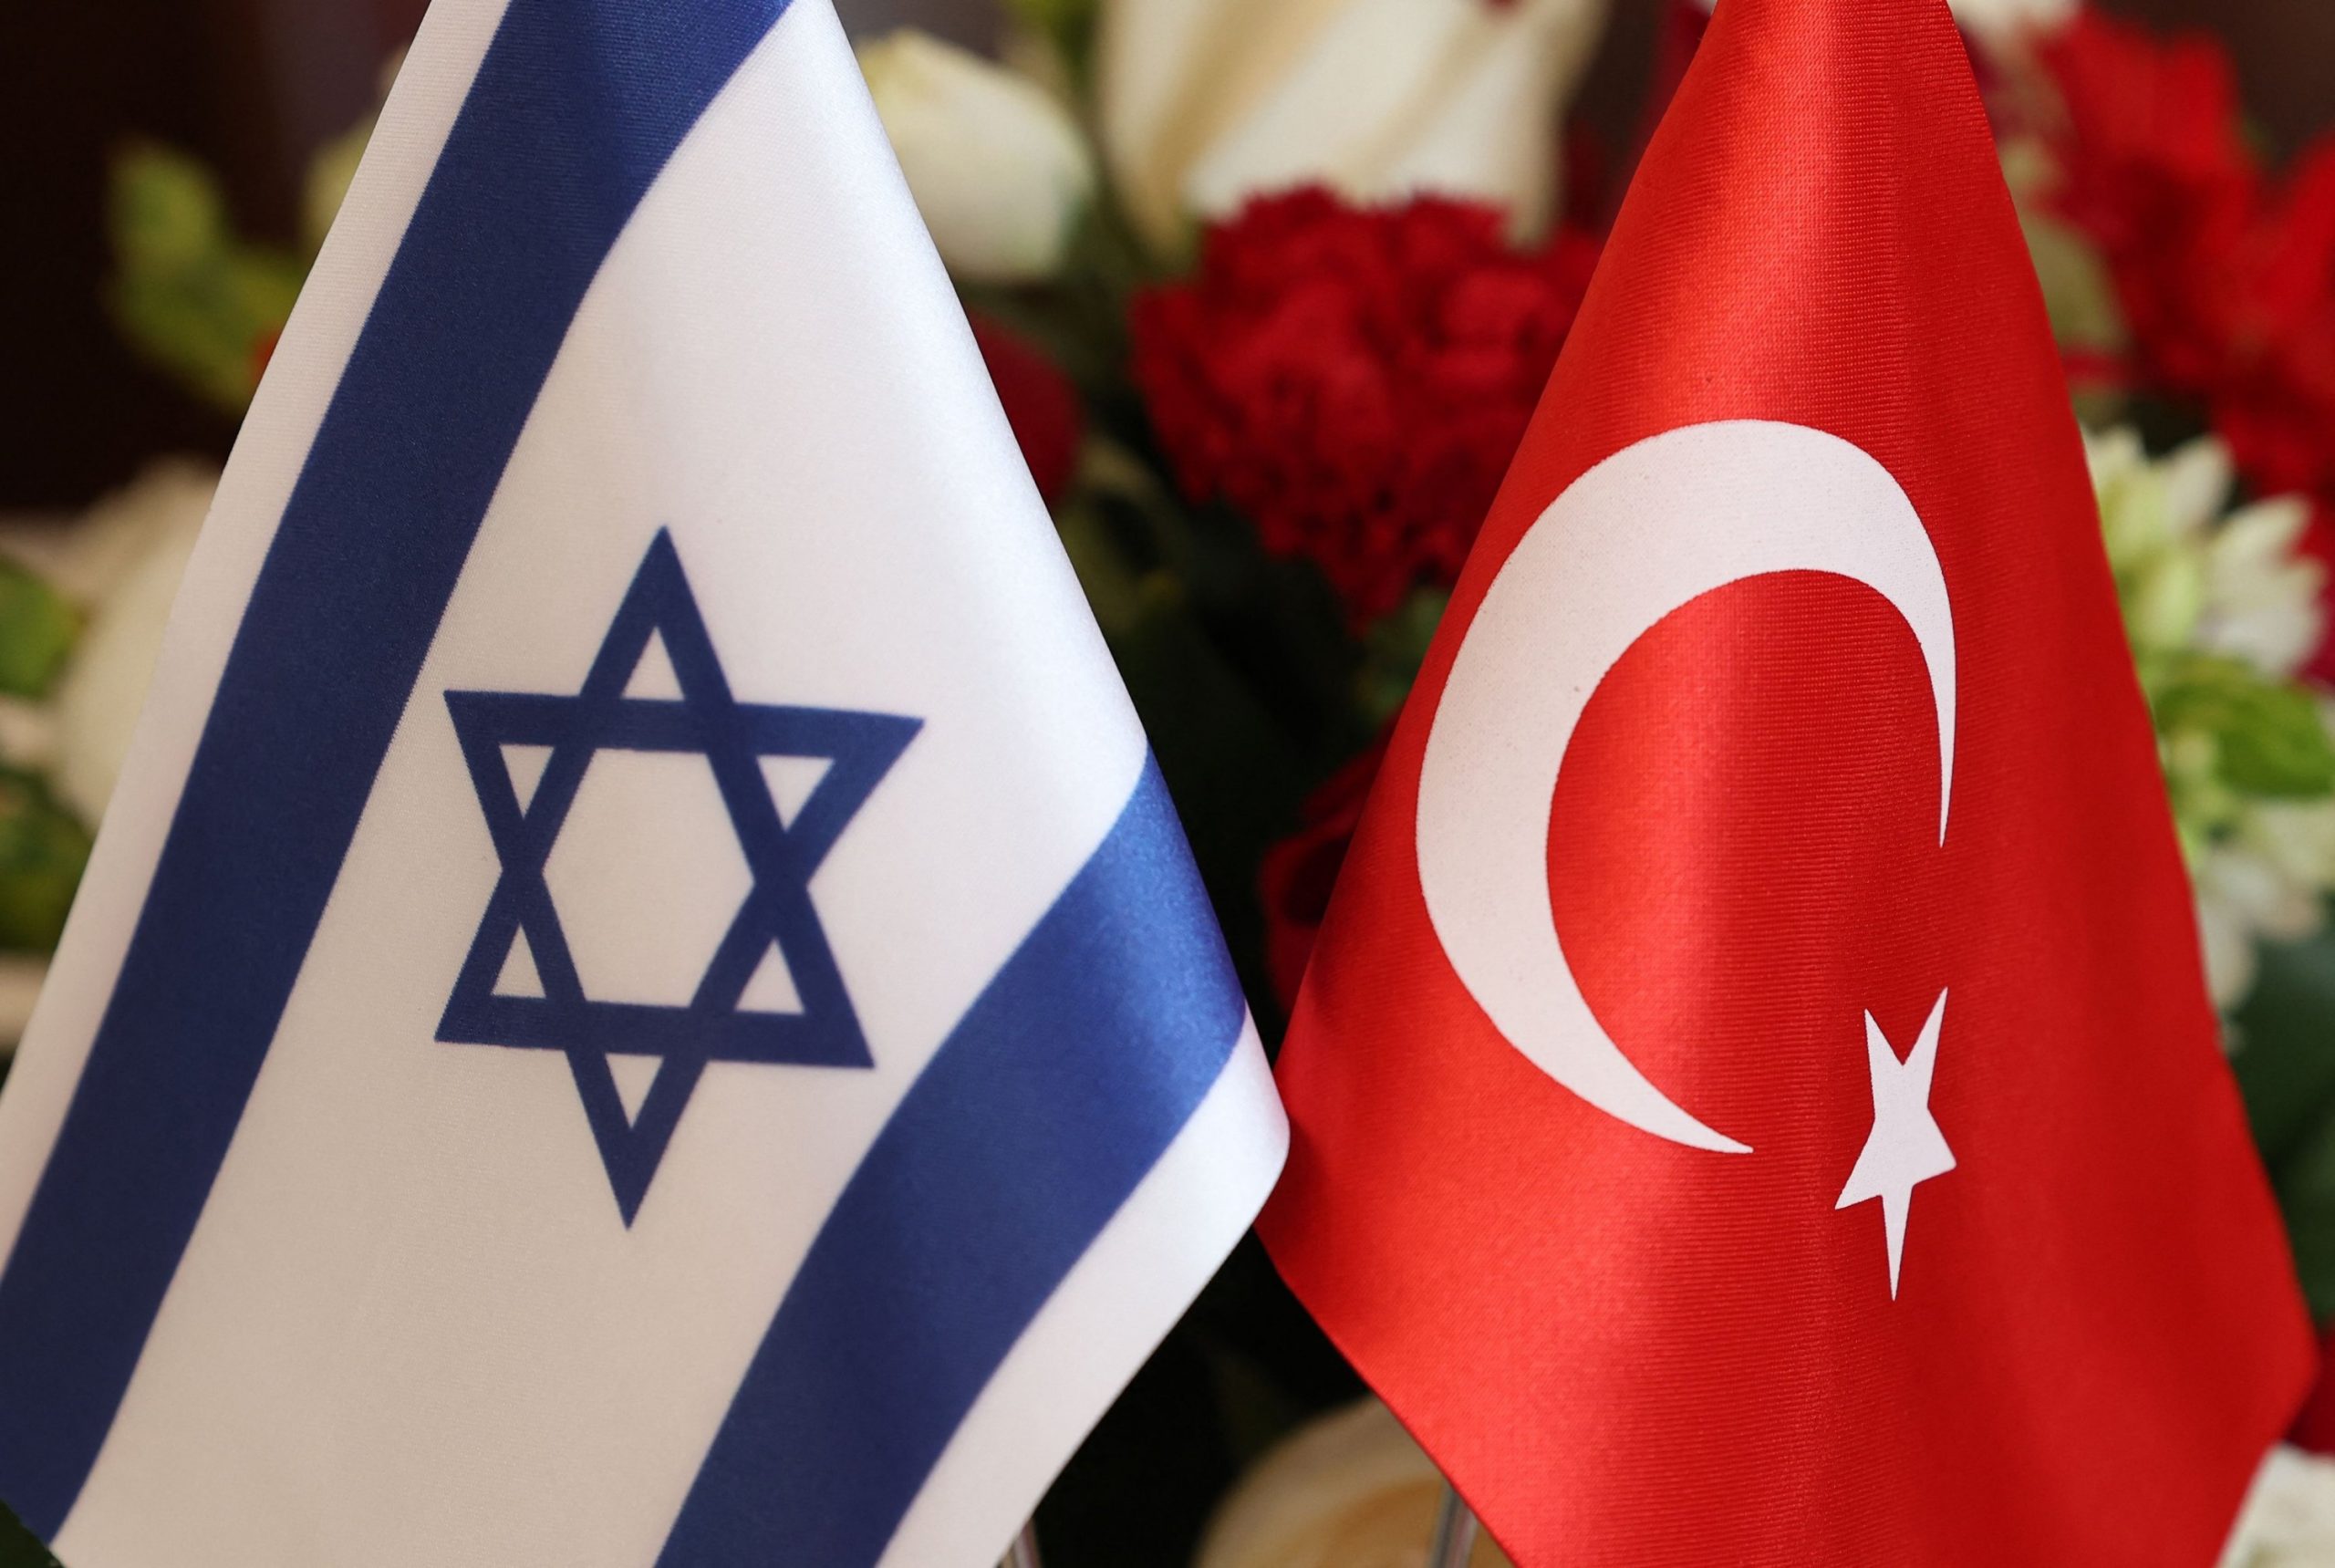 Türkiye-İsrail ilişkilerinin seyrinde yeni dönem